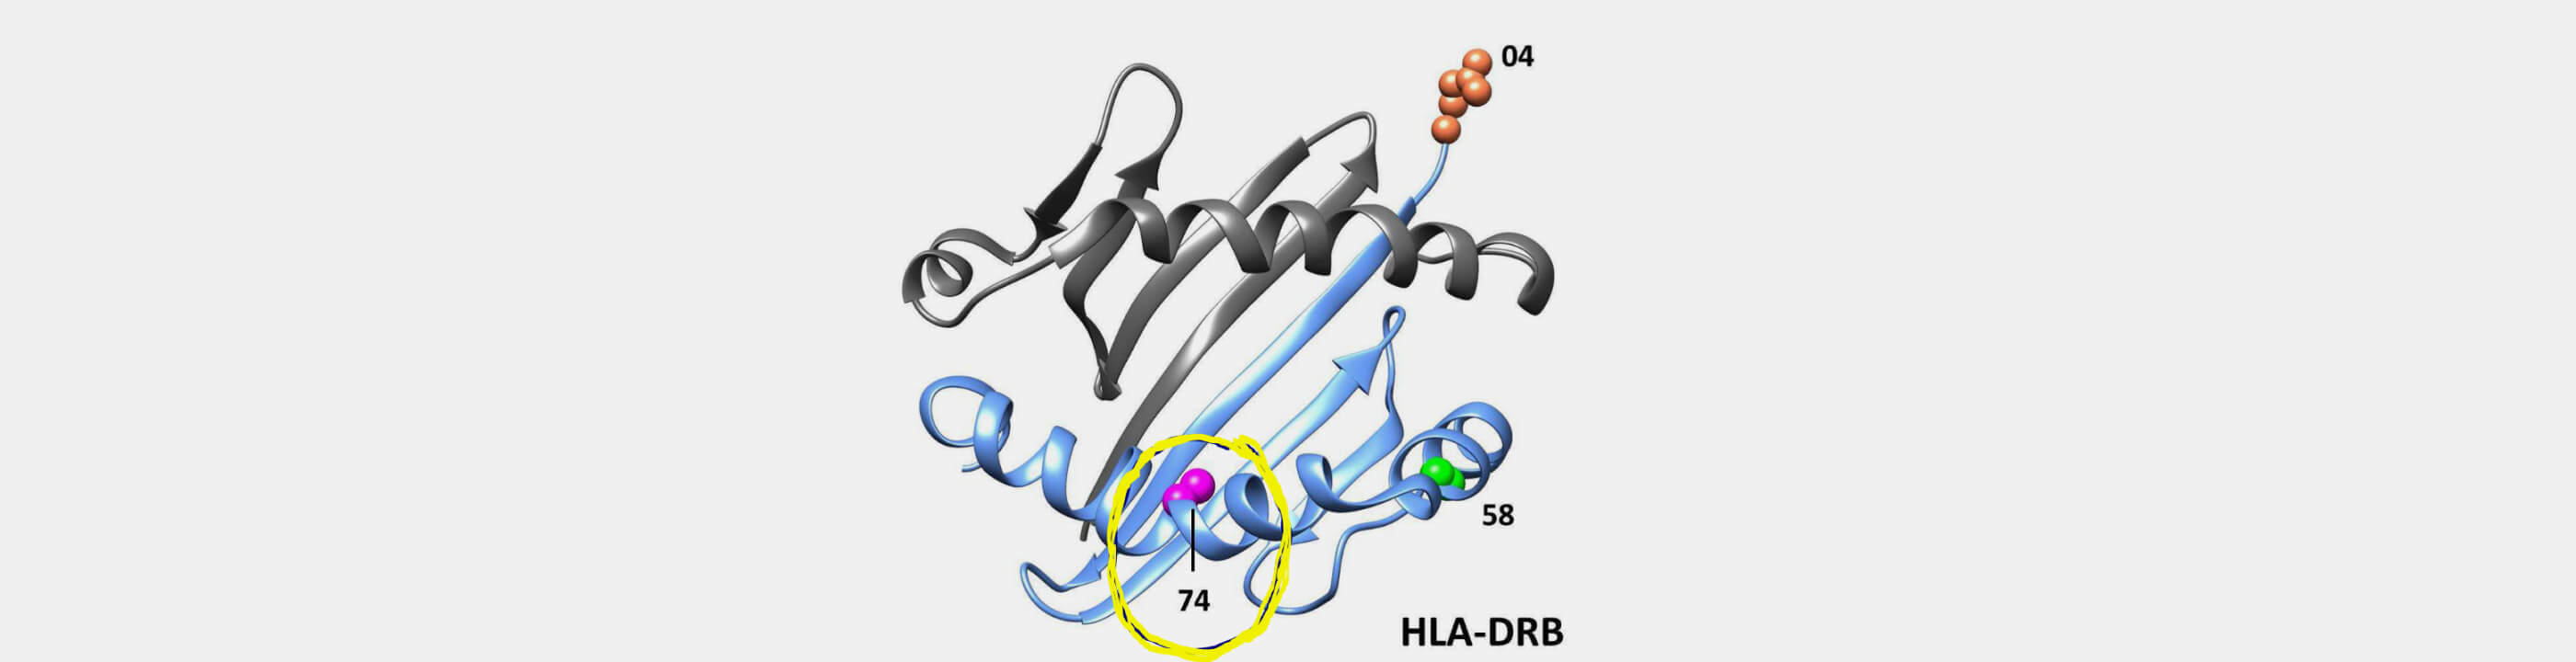 Типирование генов системы HLA II класса. (DRB1 - трансплантация органов и тканей)